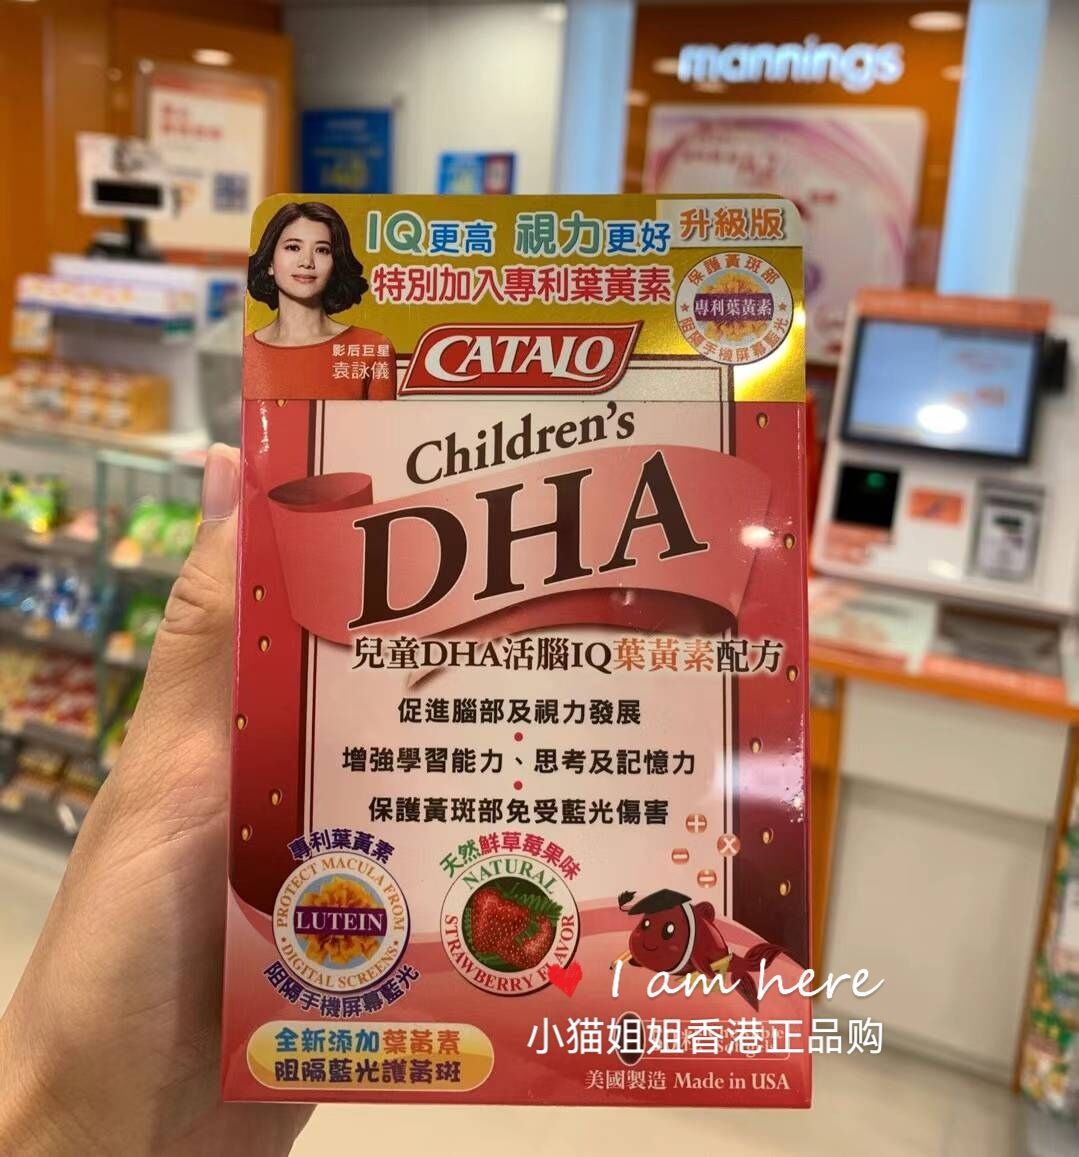 香港代购  家得路CATALO儿童DHA叶黄素双效护眼鱼油软胶囊草莓味